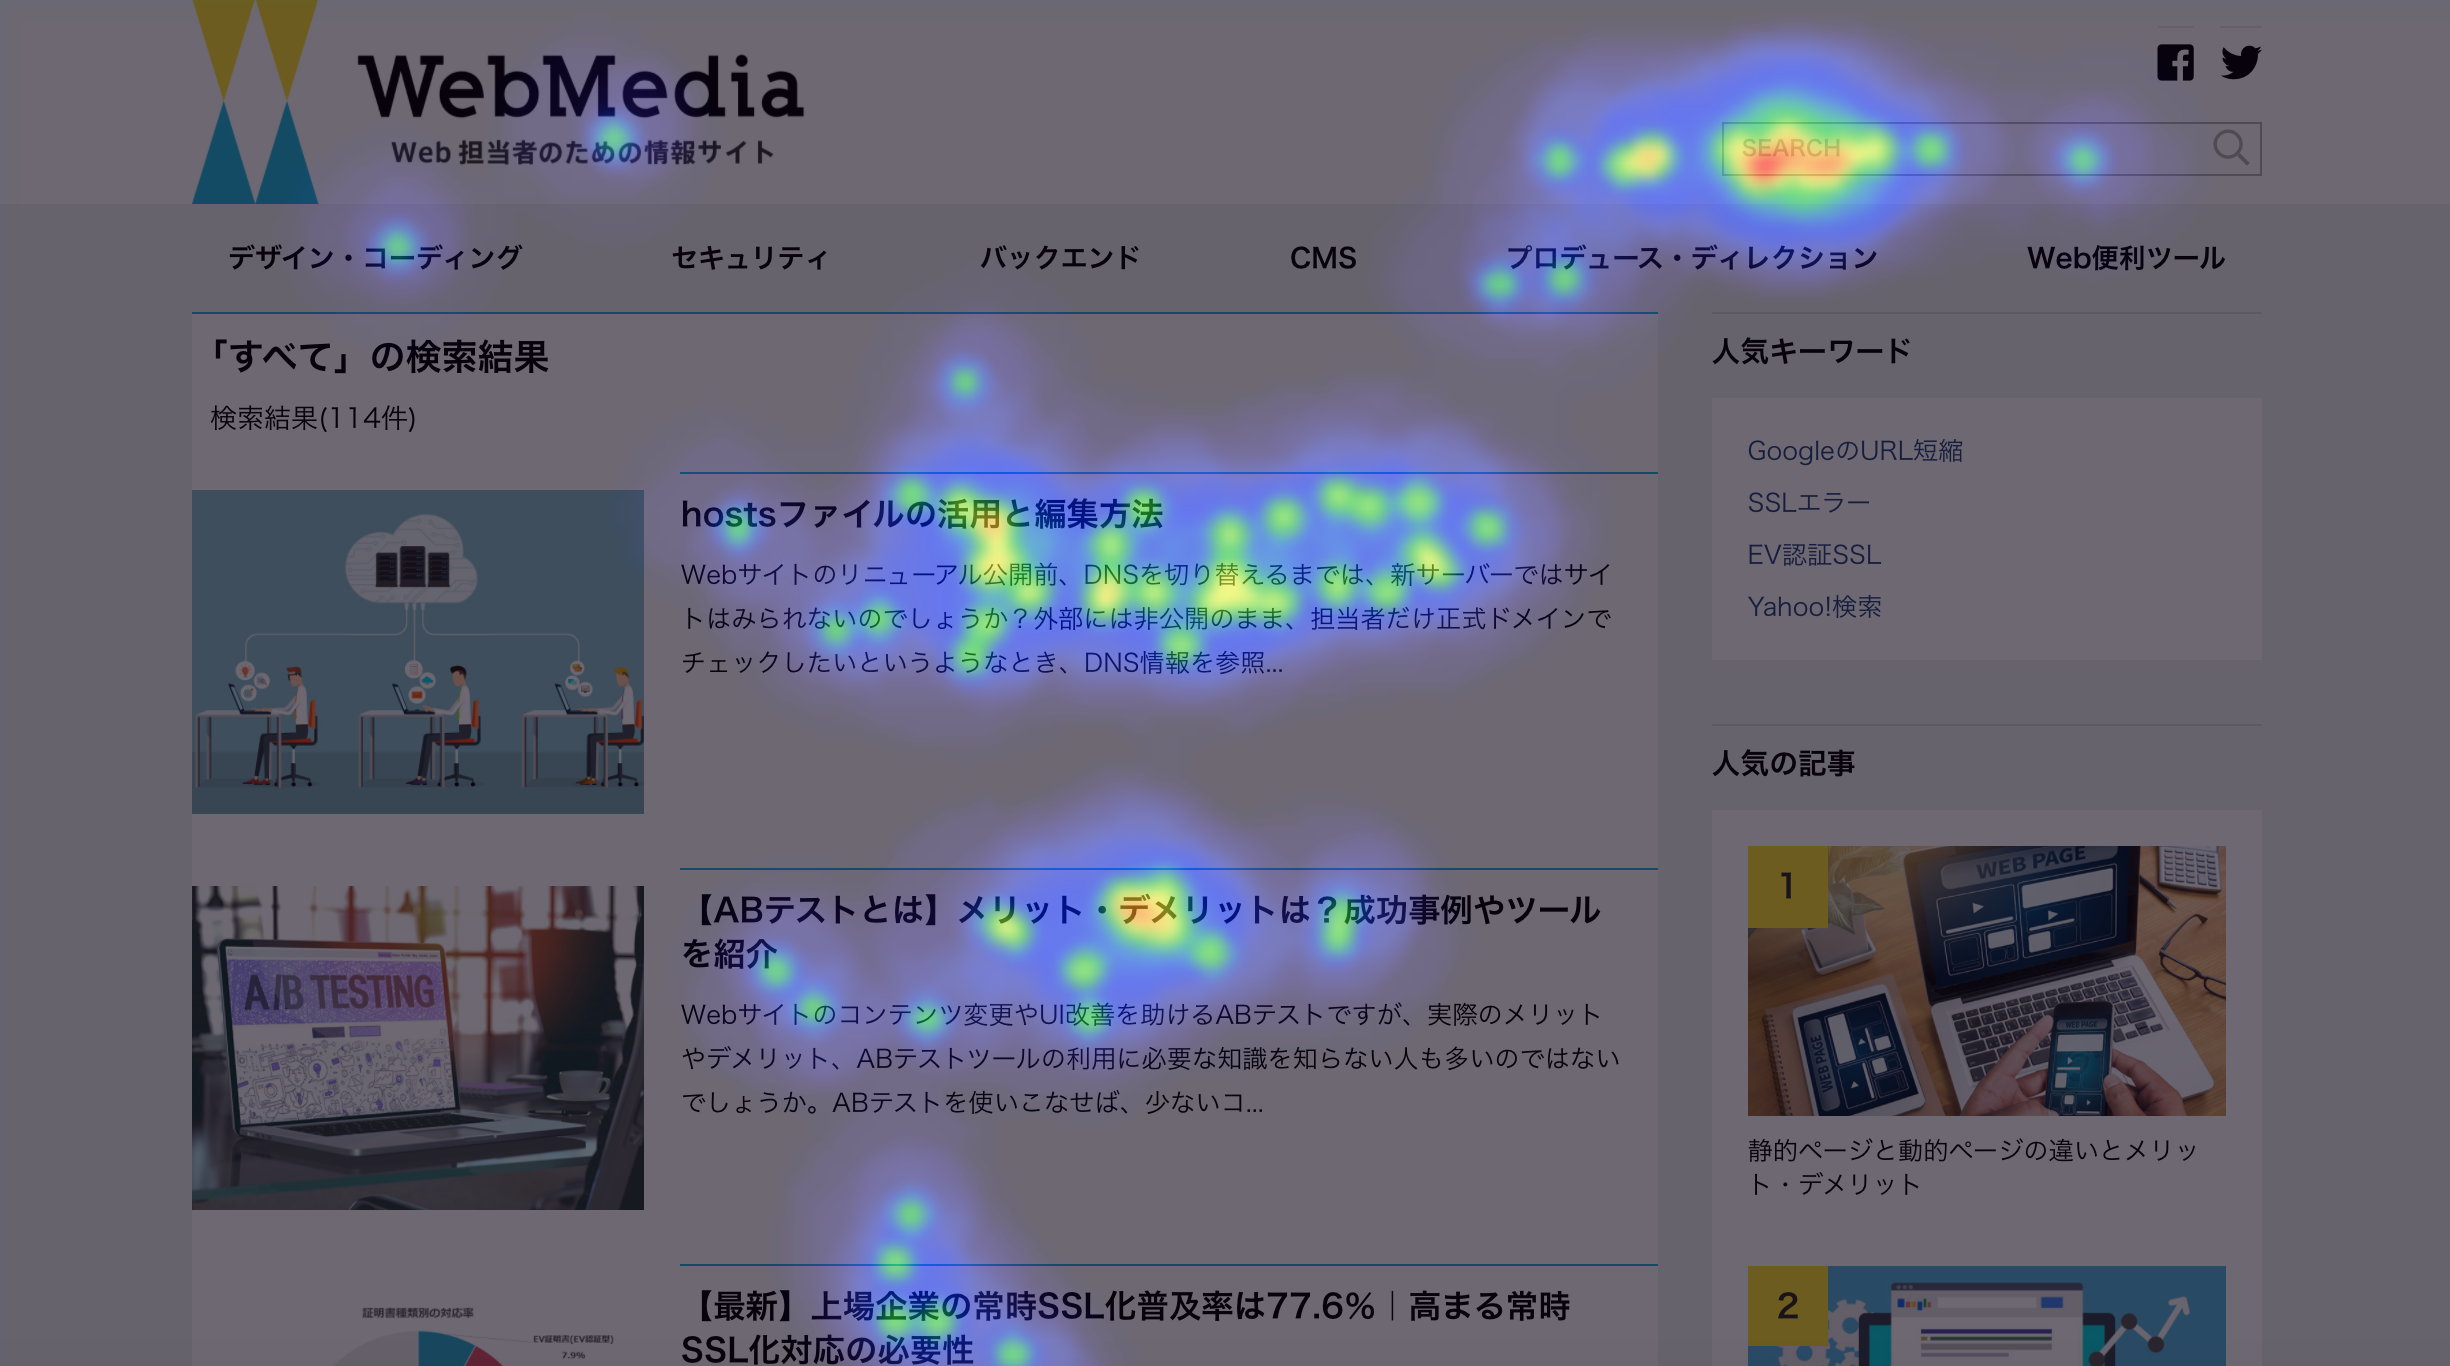 WebMedia ヒートマップ画像